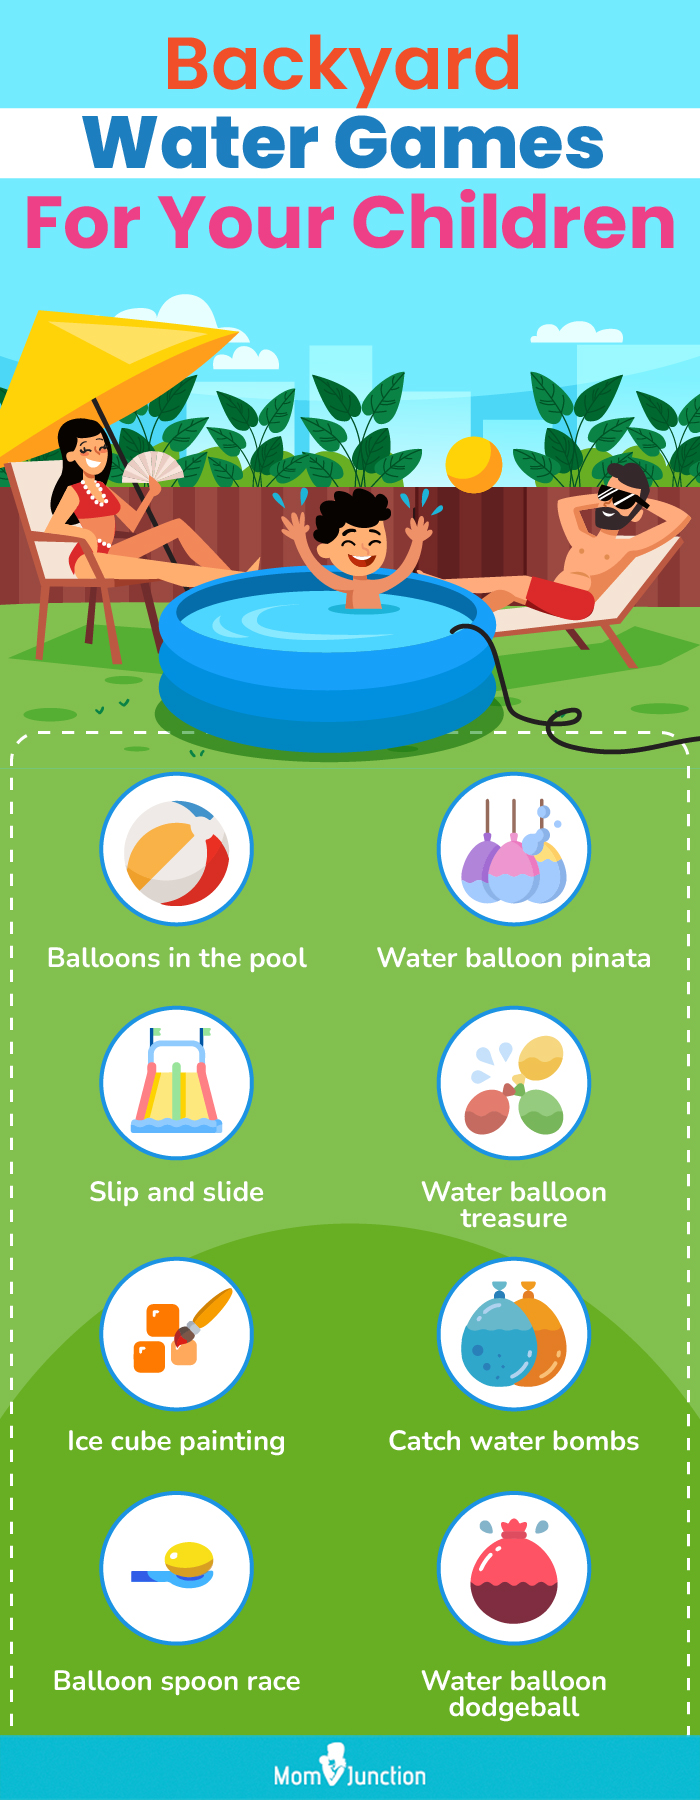 为您的孩子举办的后院水上游戏决赛(信息图)